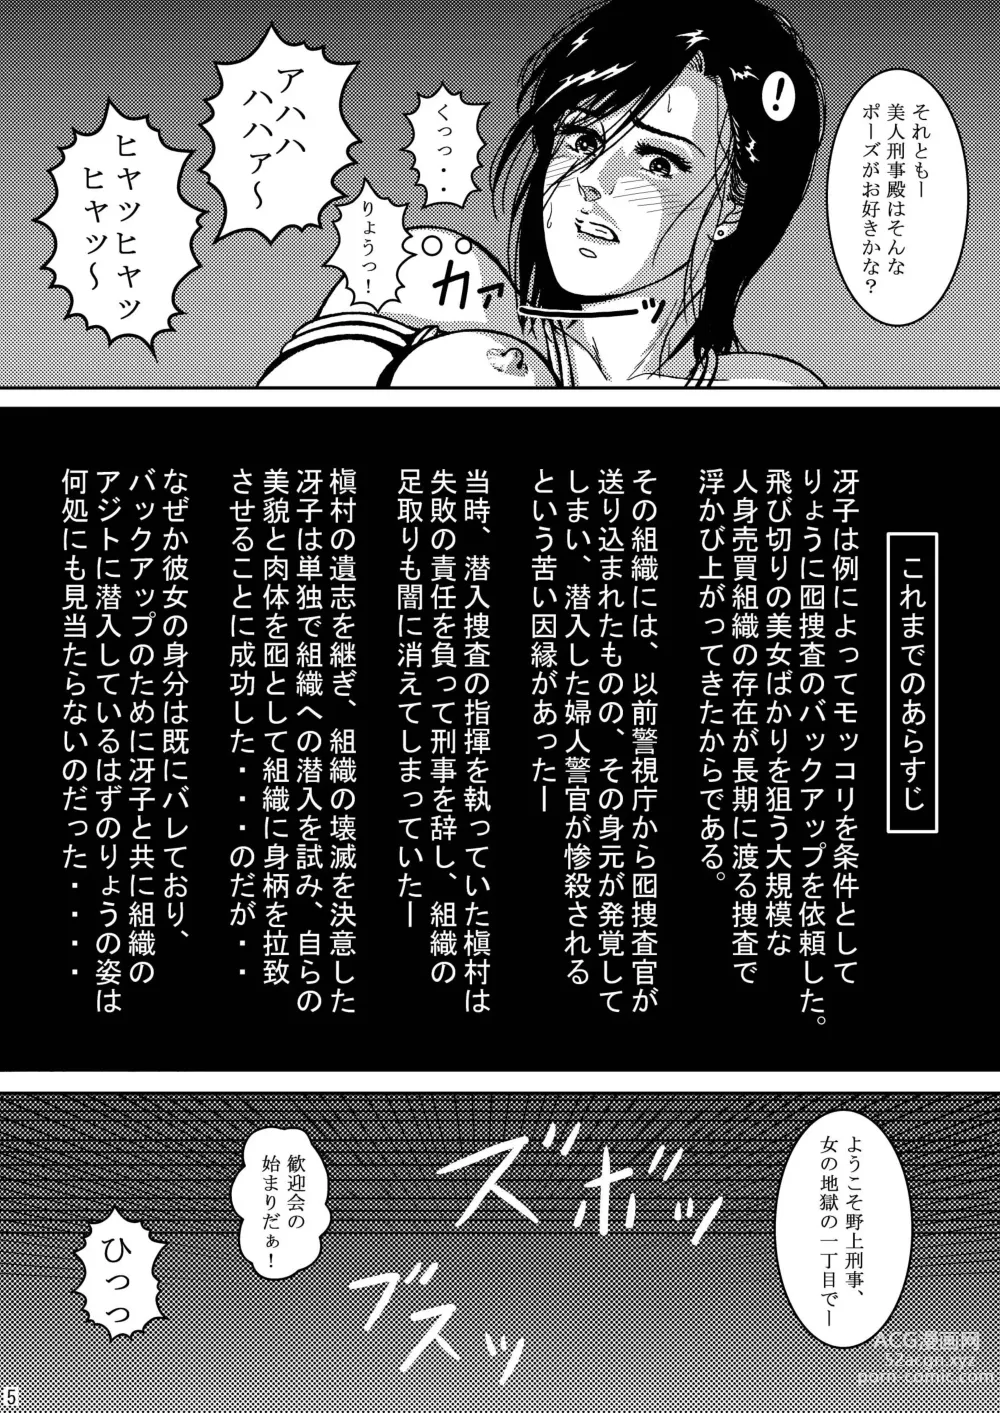 Page 5 of doujinshi Saeko Hunter